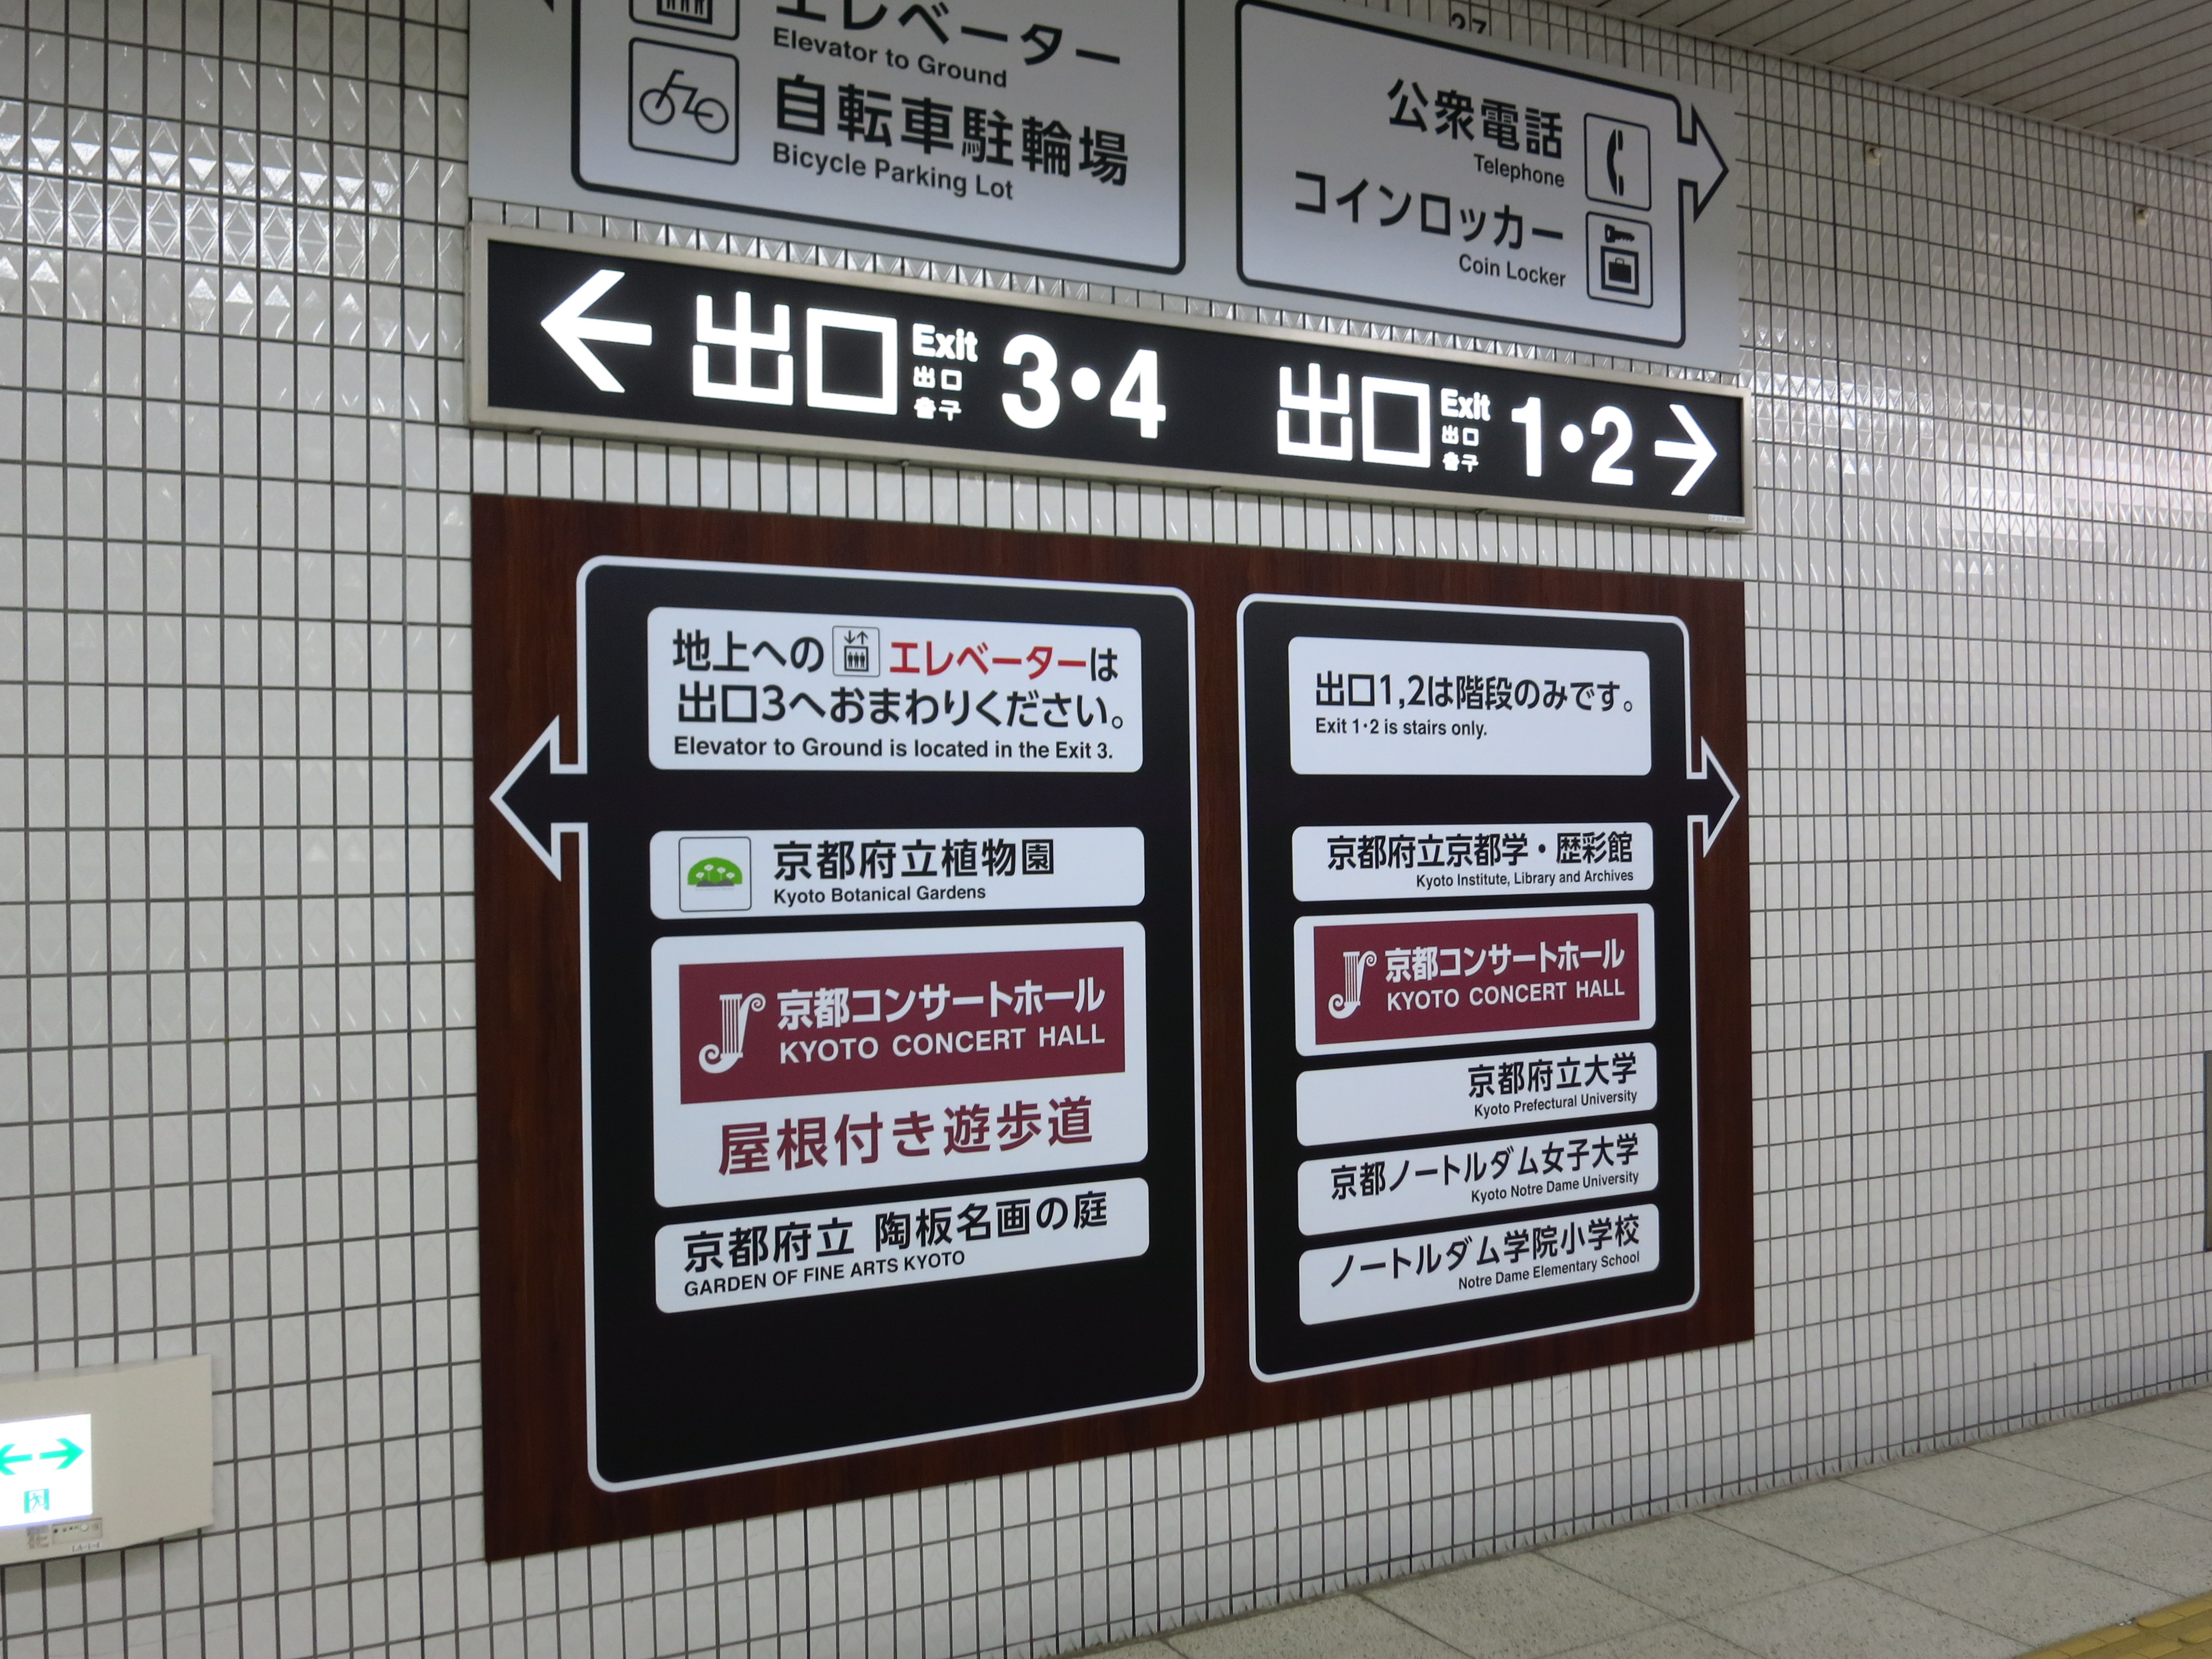 京都市営地下鉄烏丸線 北山駅に到着。出口４に向かいます。